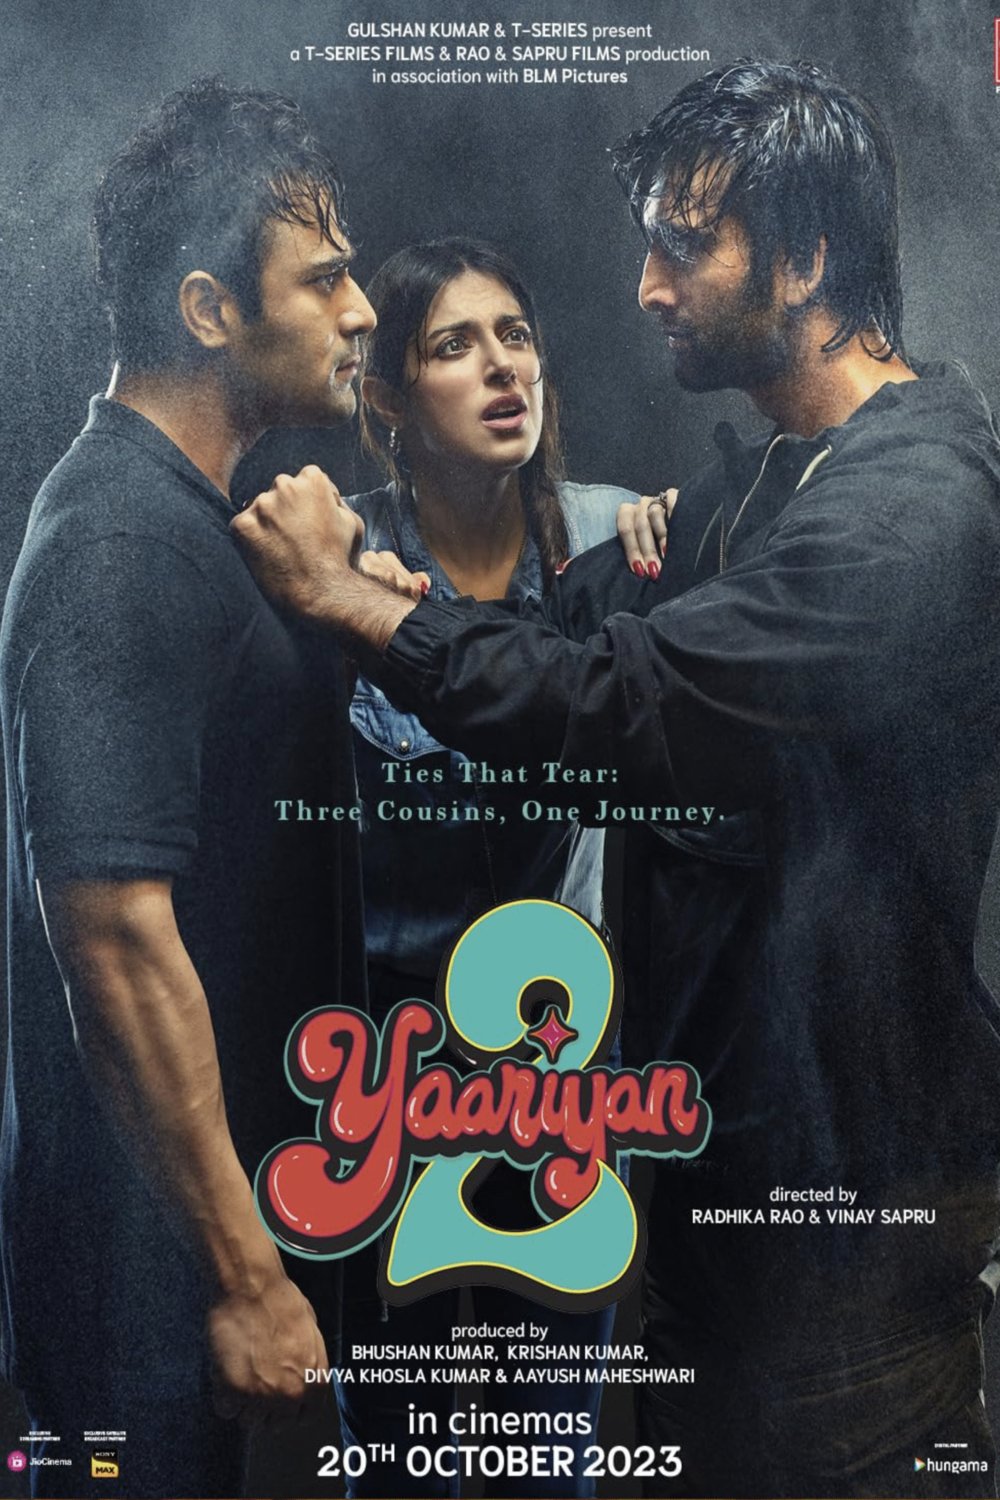 Hindi poster of the movie Yaariyan 2